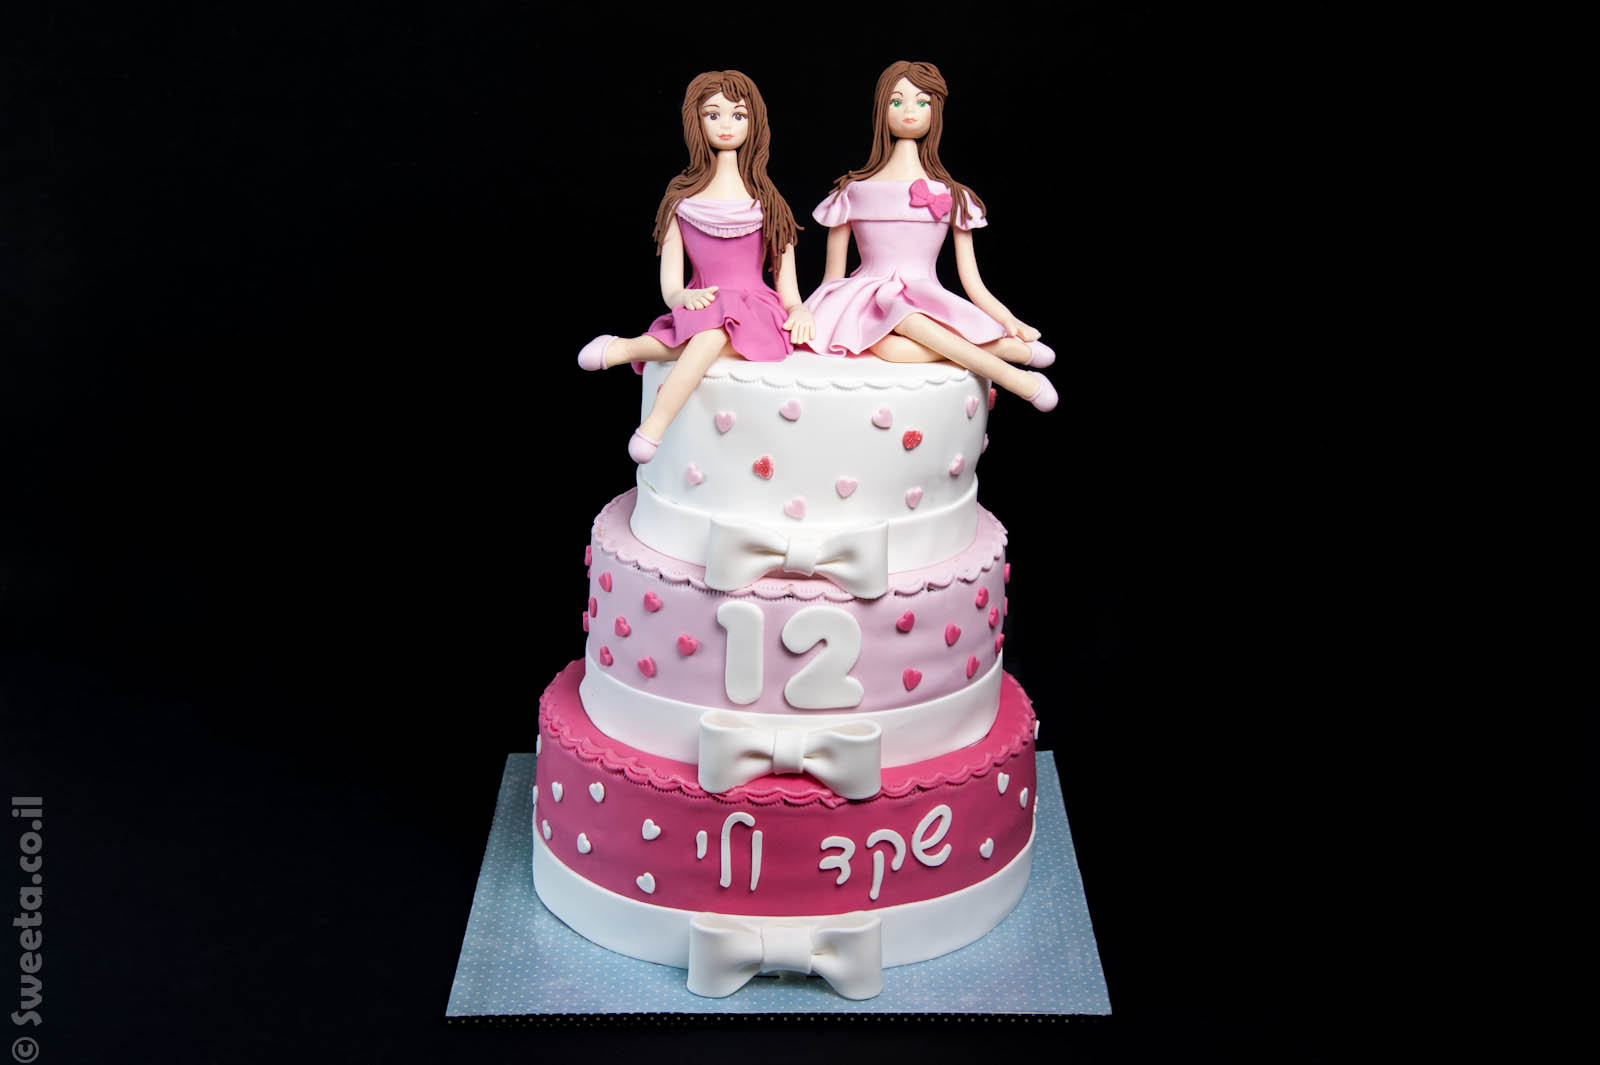 עוגת בת מצווה שלוש קומות של שקד ולי עם שתי דמויות יושבות מפוסלות בבצק סוכר